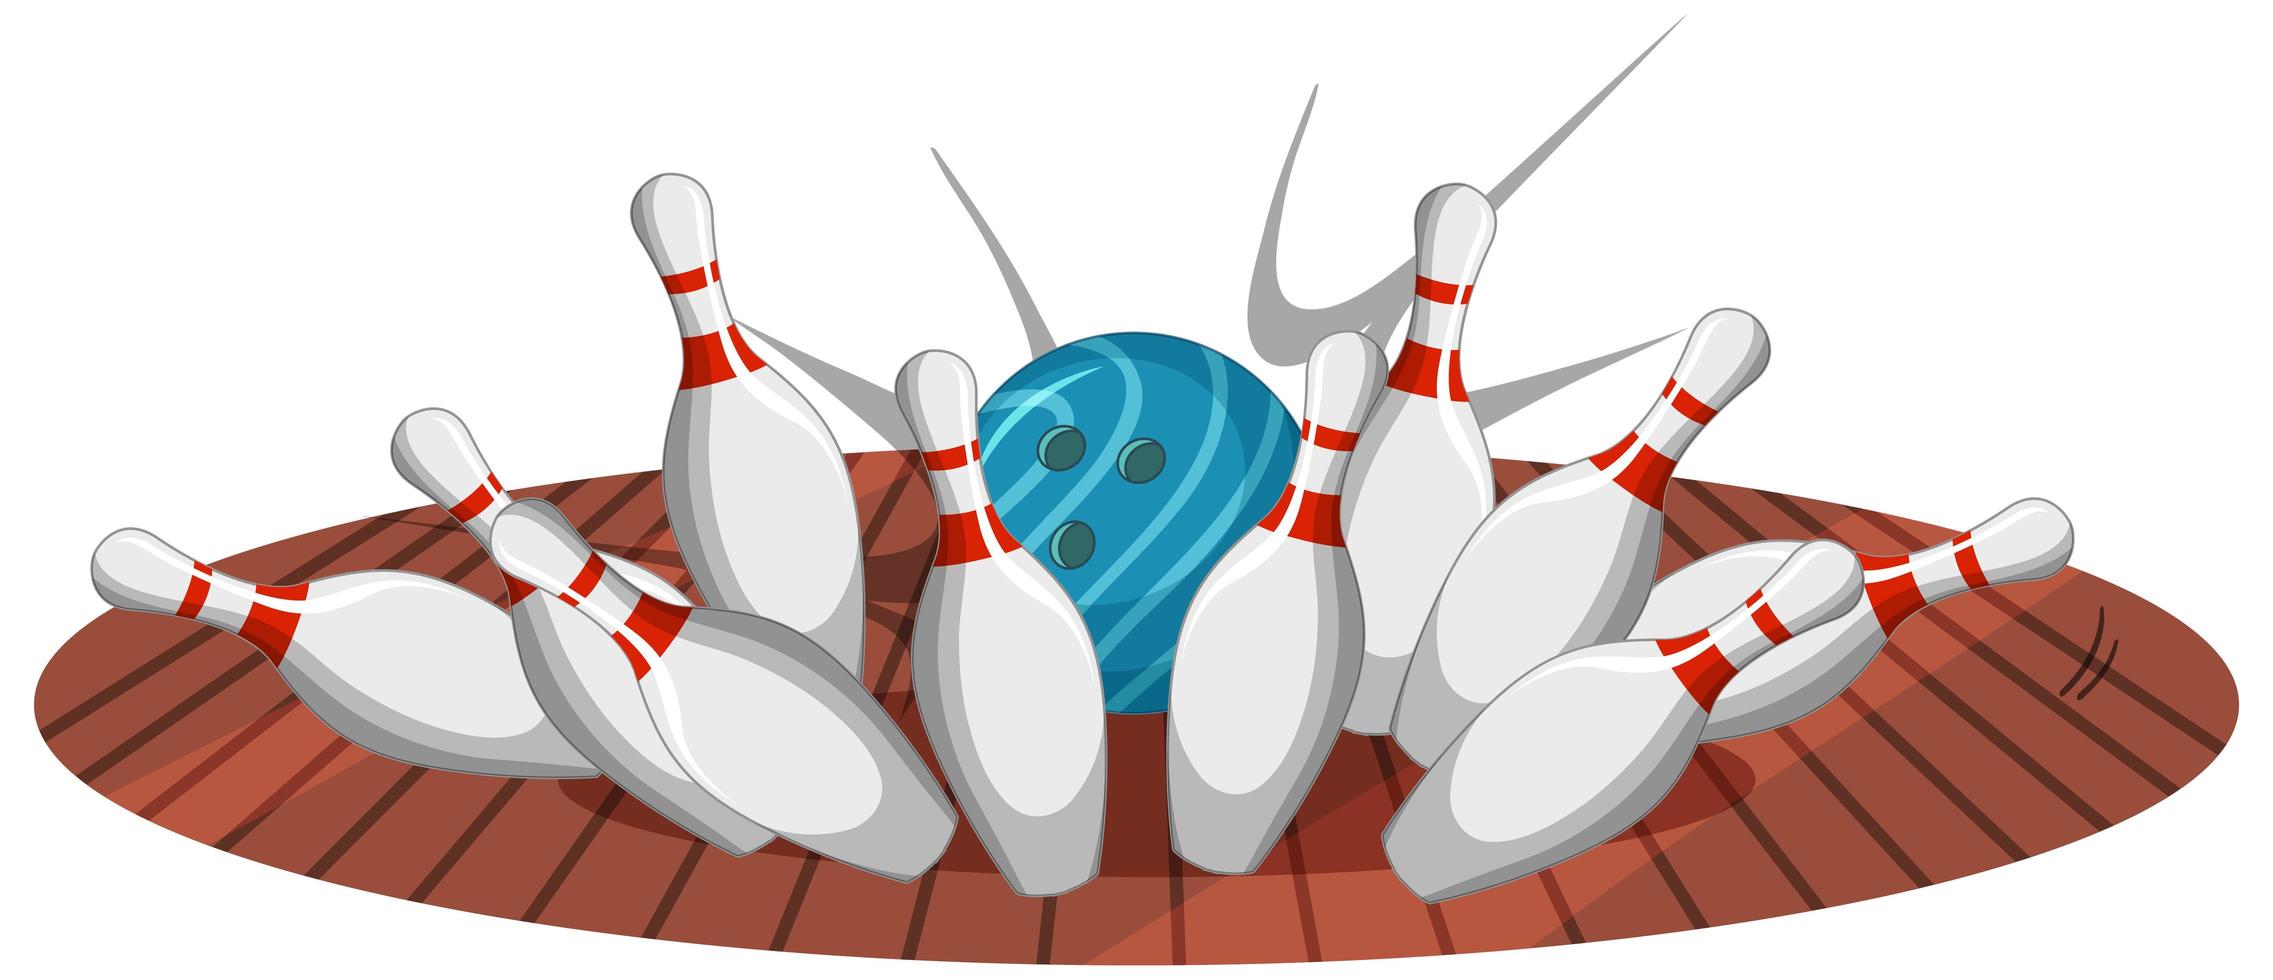 Bowlingstreikkarikaturstil lokalisiert auf weißem Hintergrund vektor